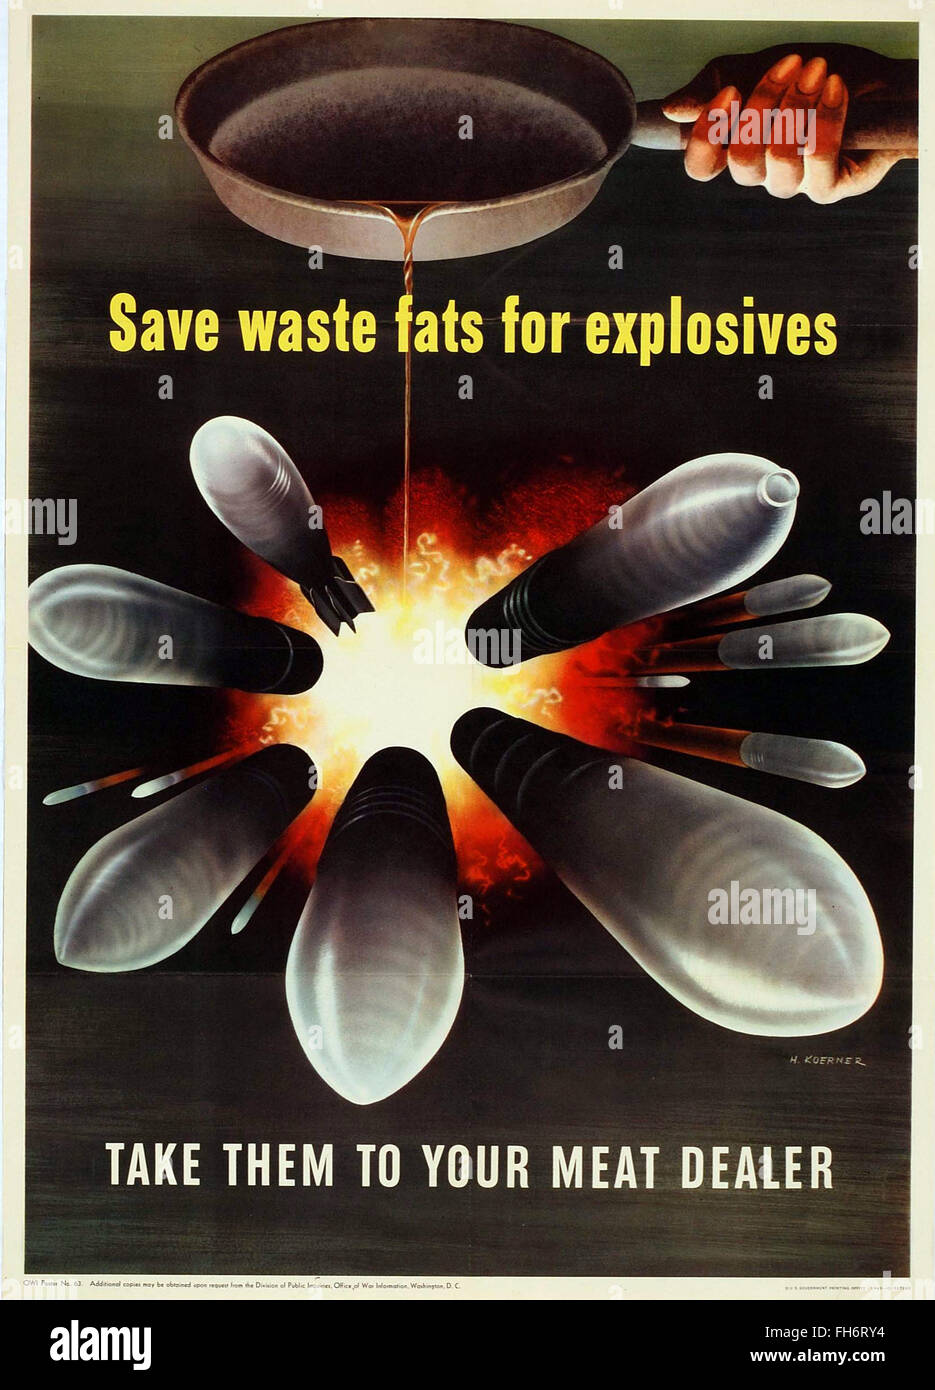 Les déchets de graisses pour sauver les explosifs - Affiches de propagande US - WWII Banque D'Images